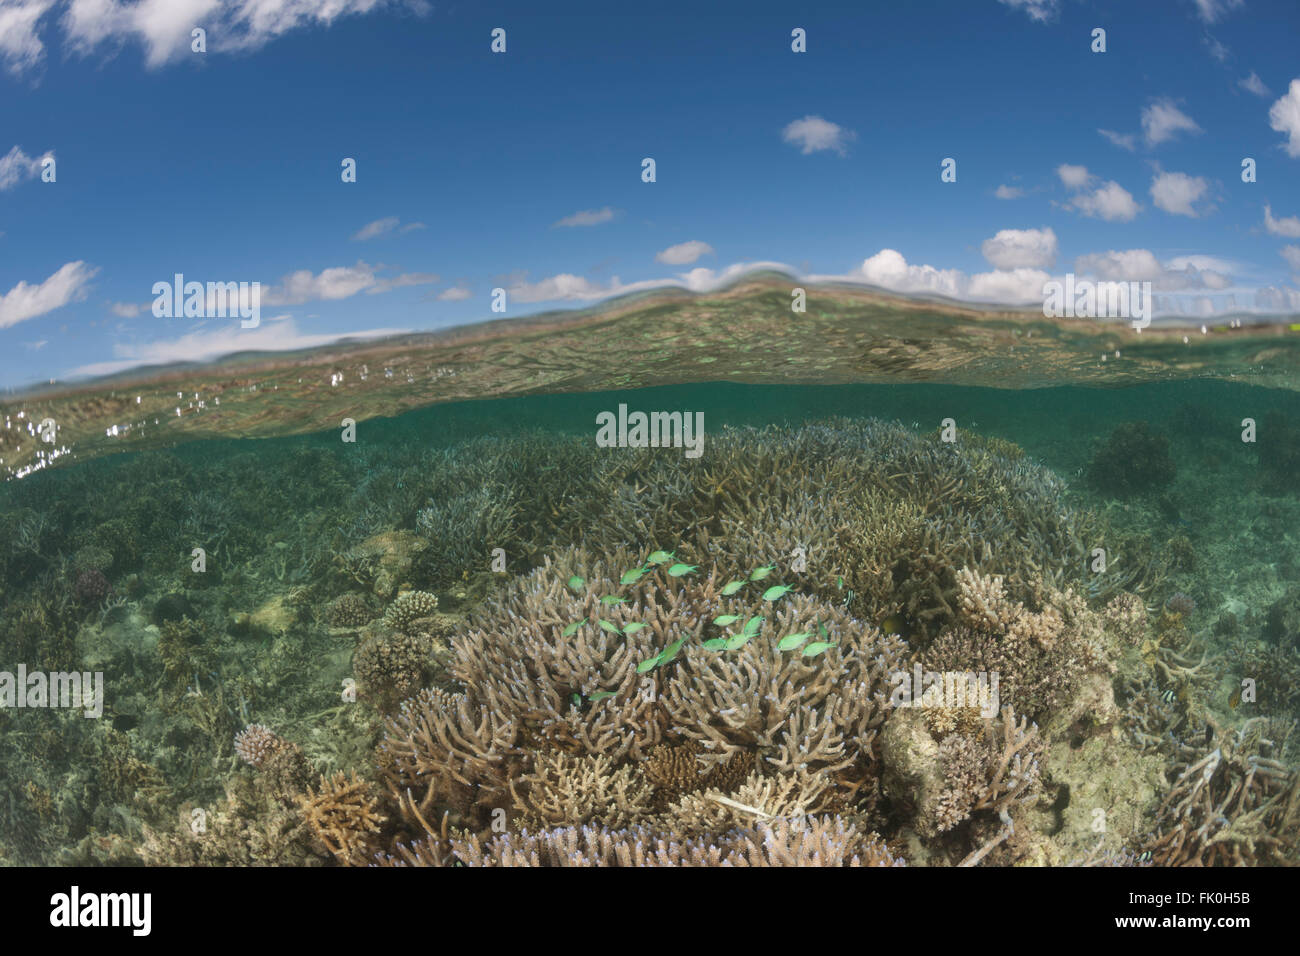 Gesunden Korallenriffe mit reichlich Meeresleben in Tambo oder Marine Schutzgebiete - Ebene aufgeteilt. Stockfoto